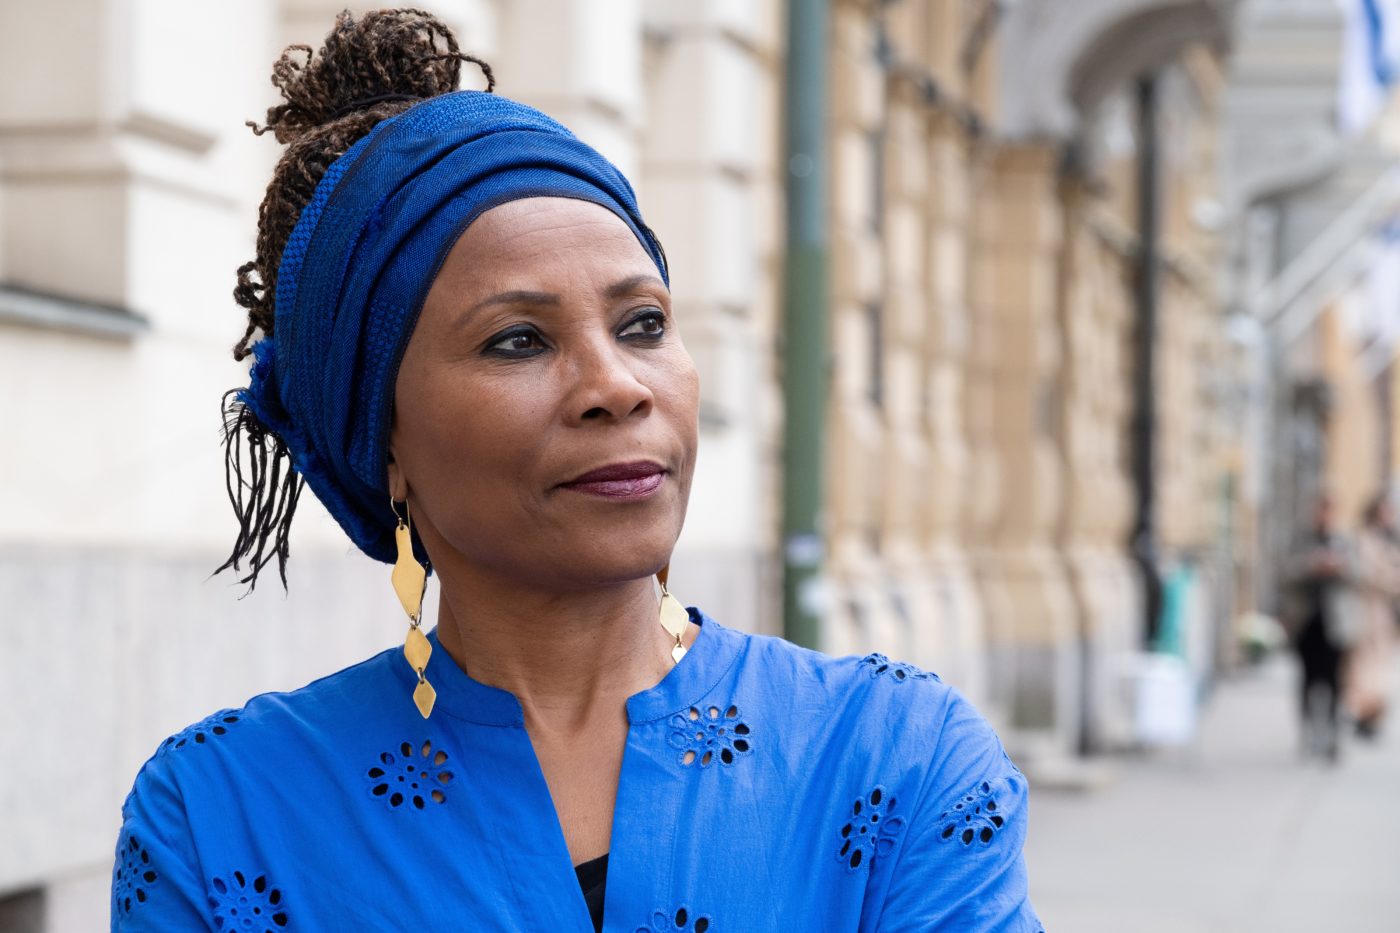 Keski-ikäinen afrikkalaisen näköinen nainen katsoo eteenpäin, sininen leveä huivi päässä.